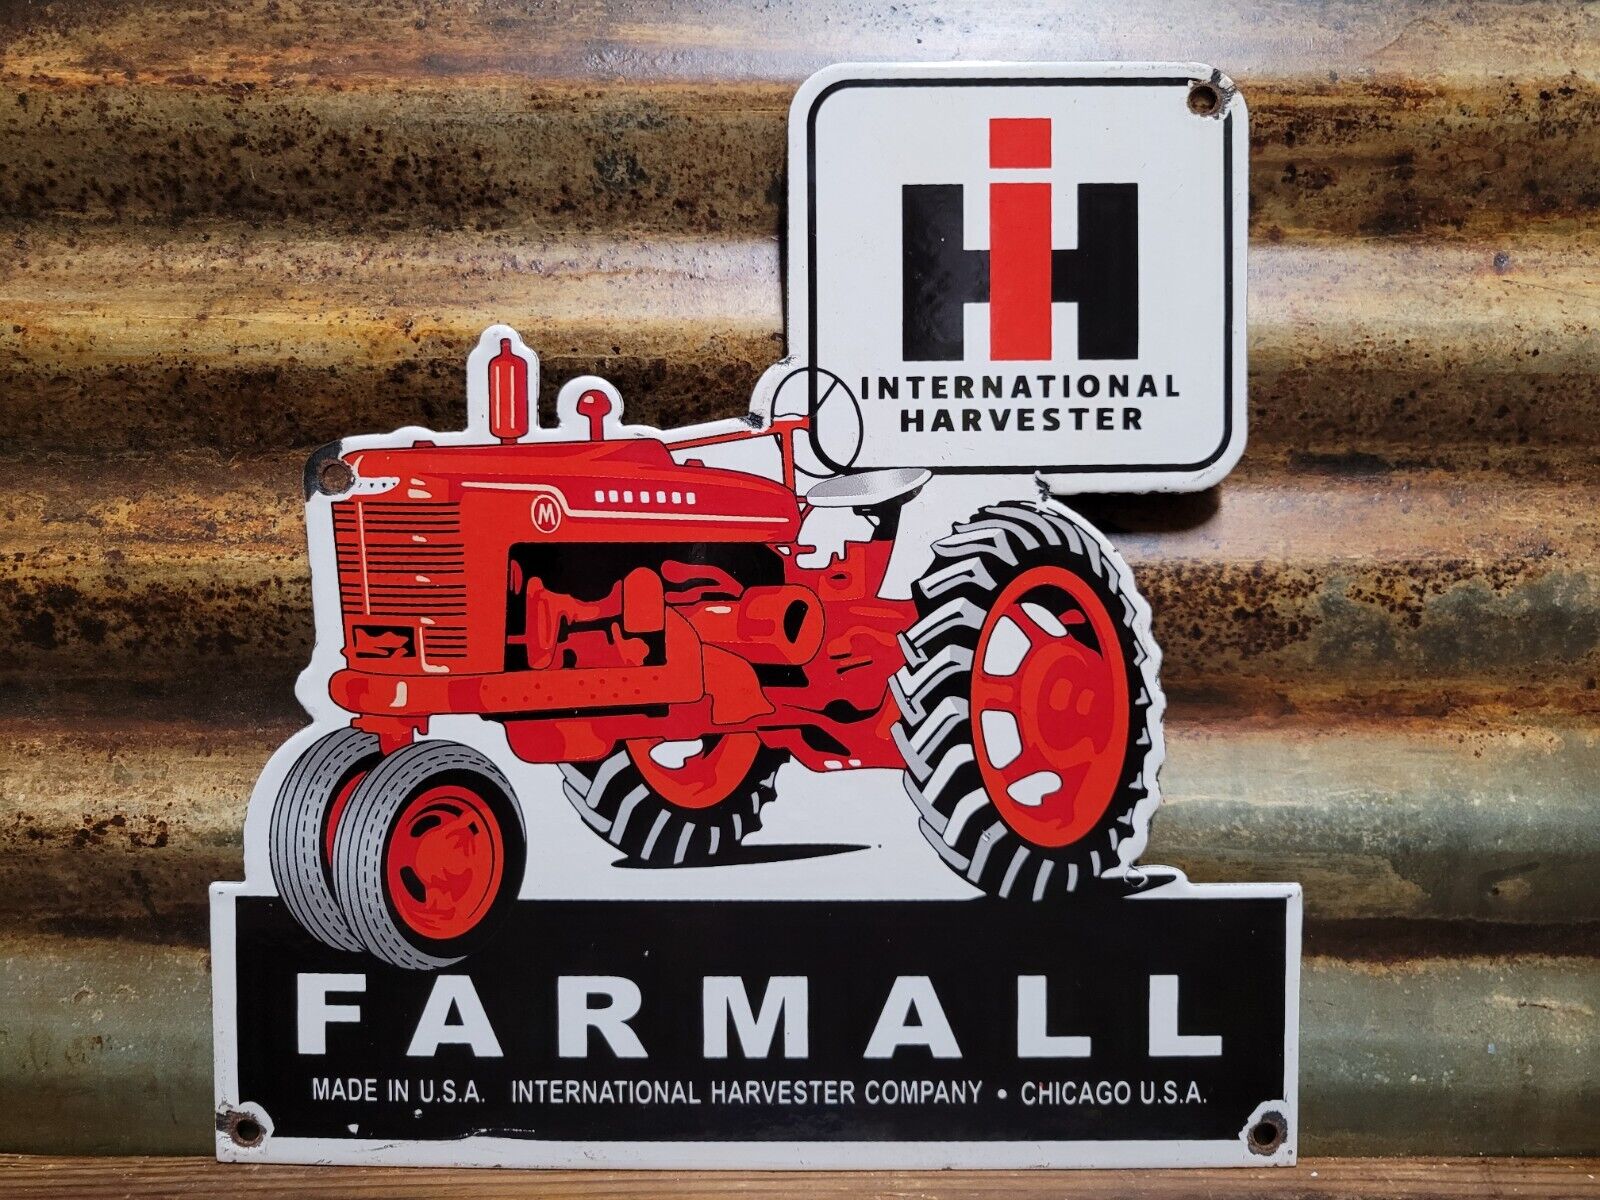 VINTAGE INTERNATIONAL HARVESTER PORCELAIN SIGN FARMALL TRACTOR FARM DEALER SALES